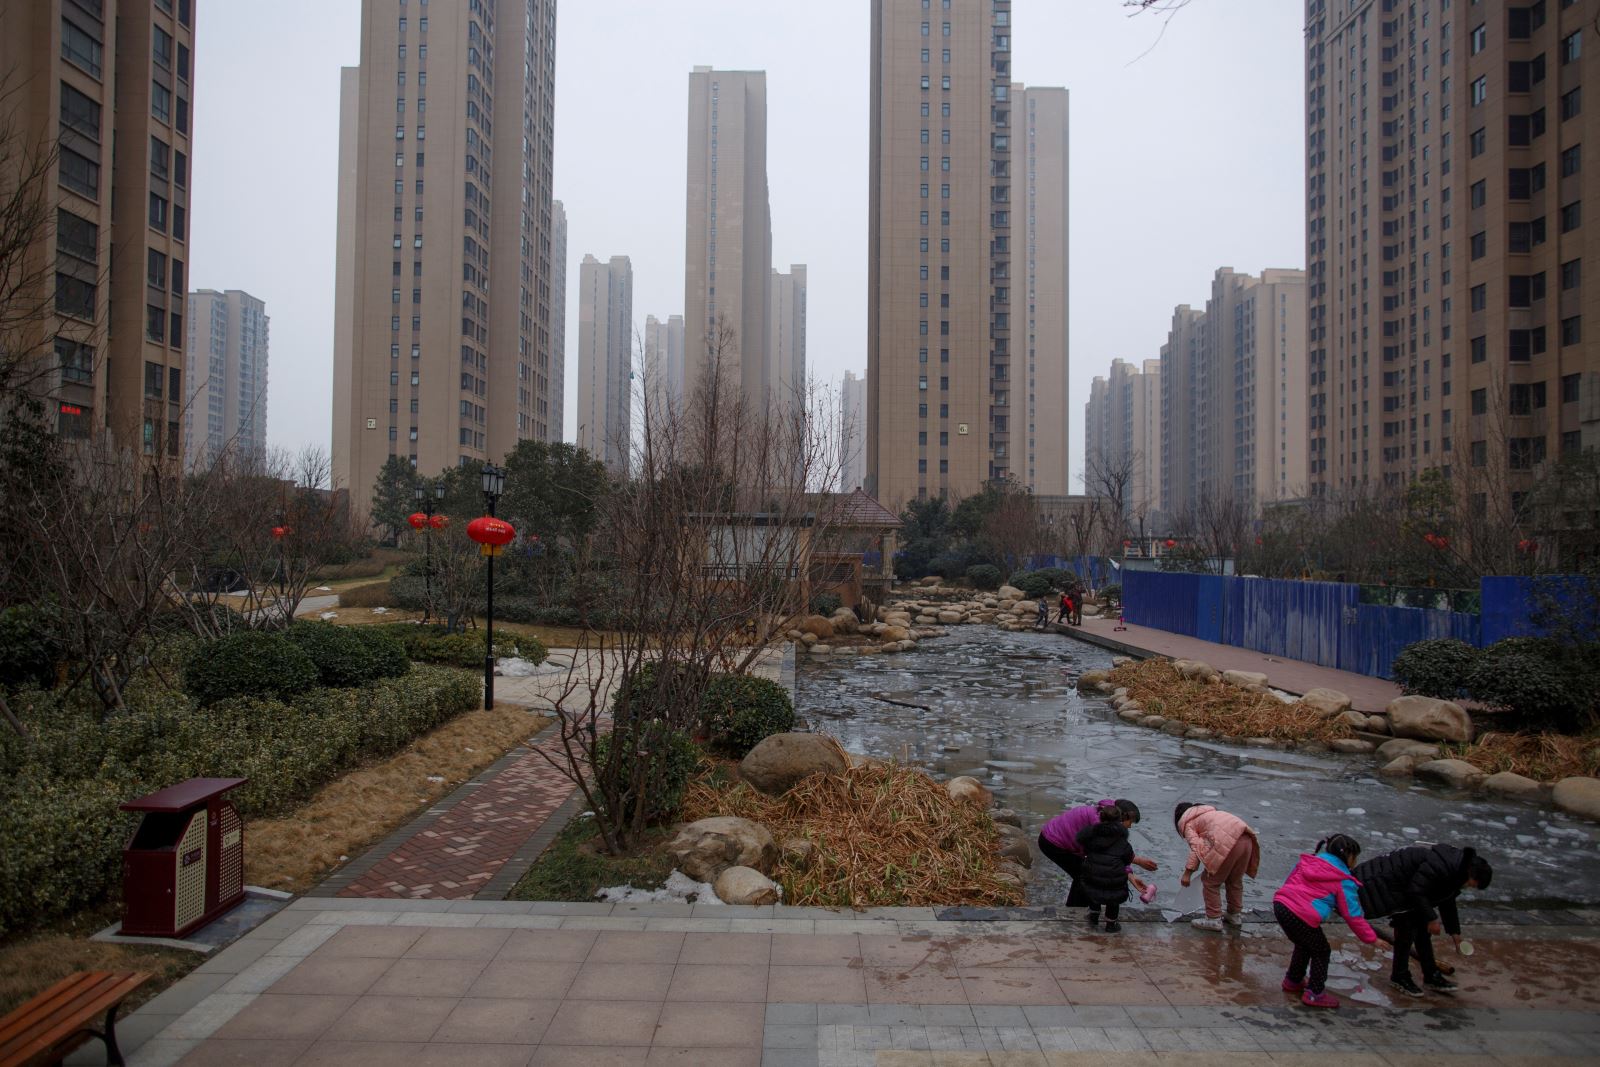 Đánh cược đầu tư vào chung cư cũ 'giá rẻ như cho' tại Trung Quốc